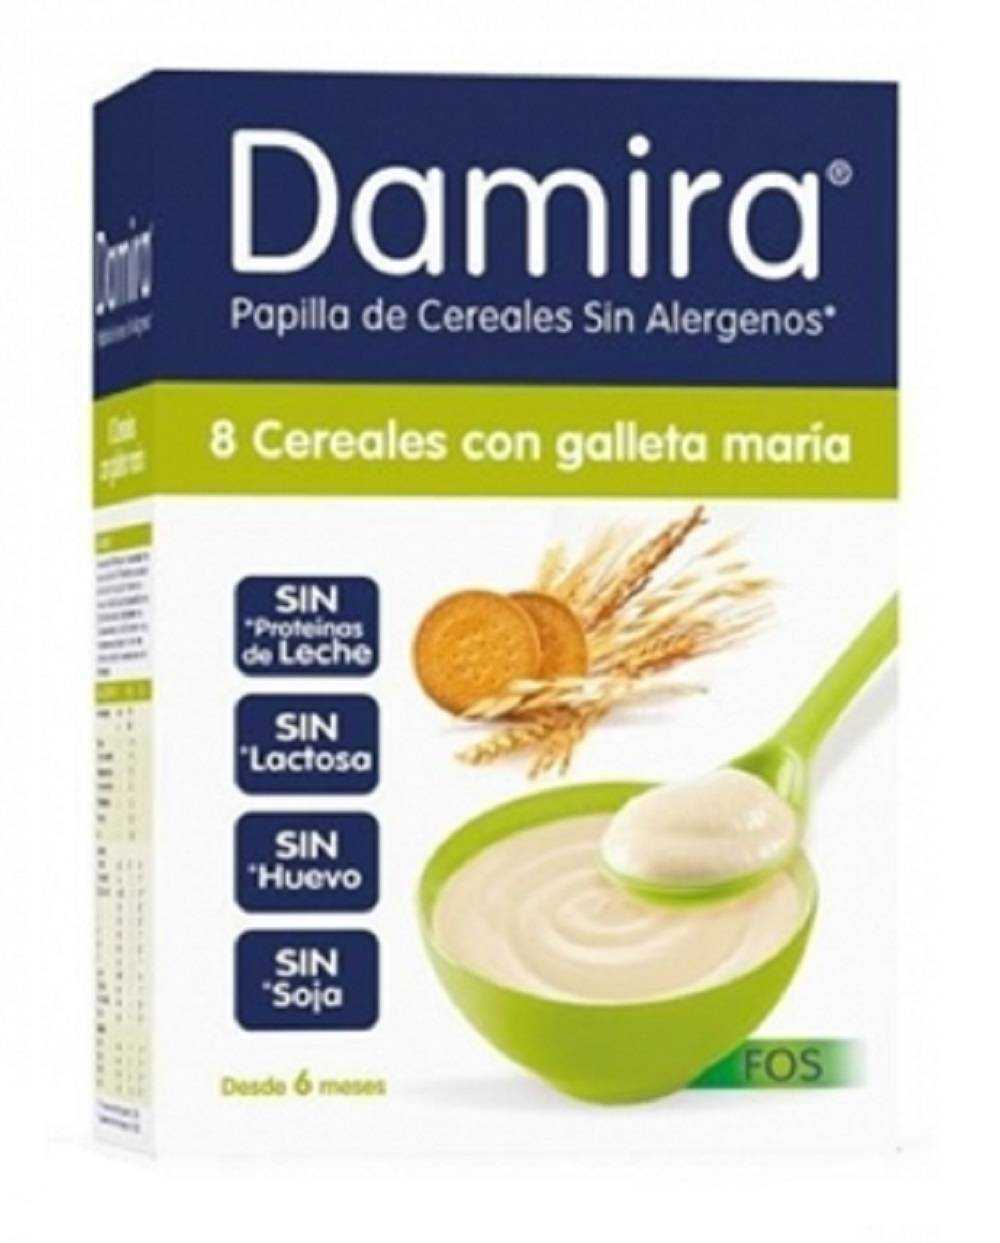 Damira 8 Cereales con galletas María 600 g